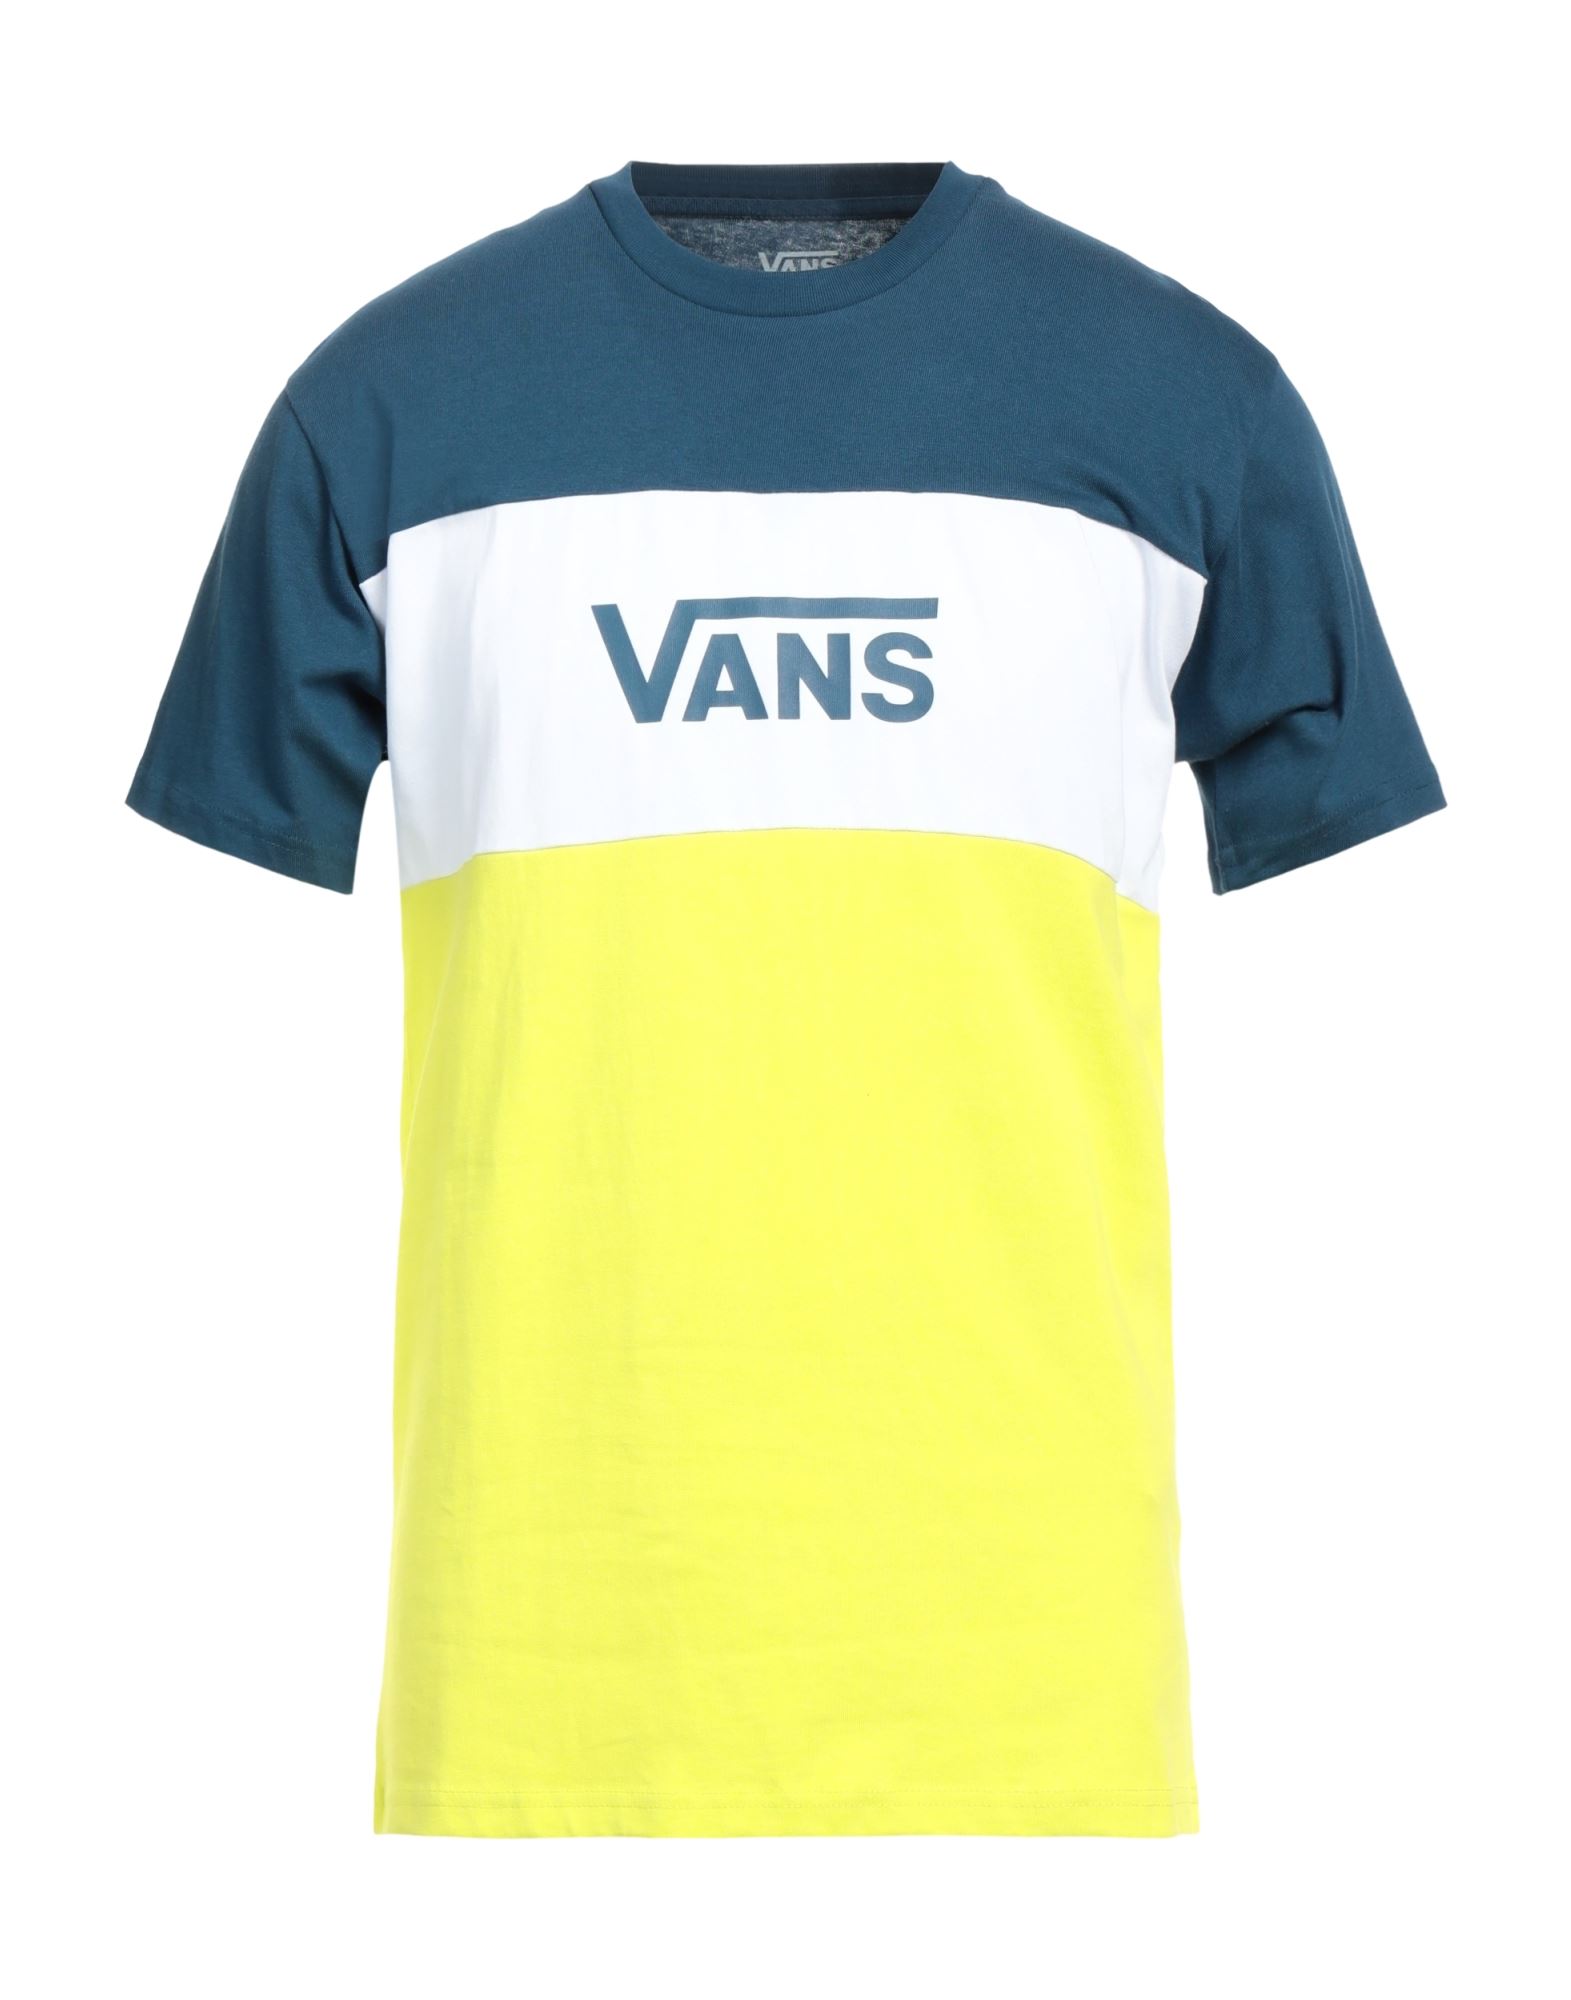 VANS T-shirts Herren Blau von VANS